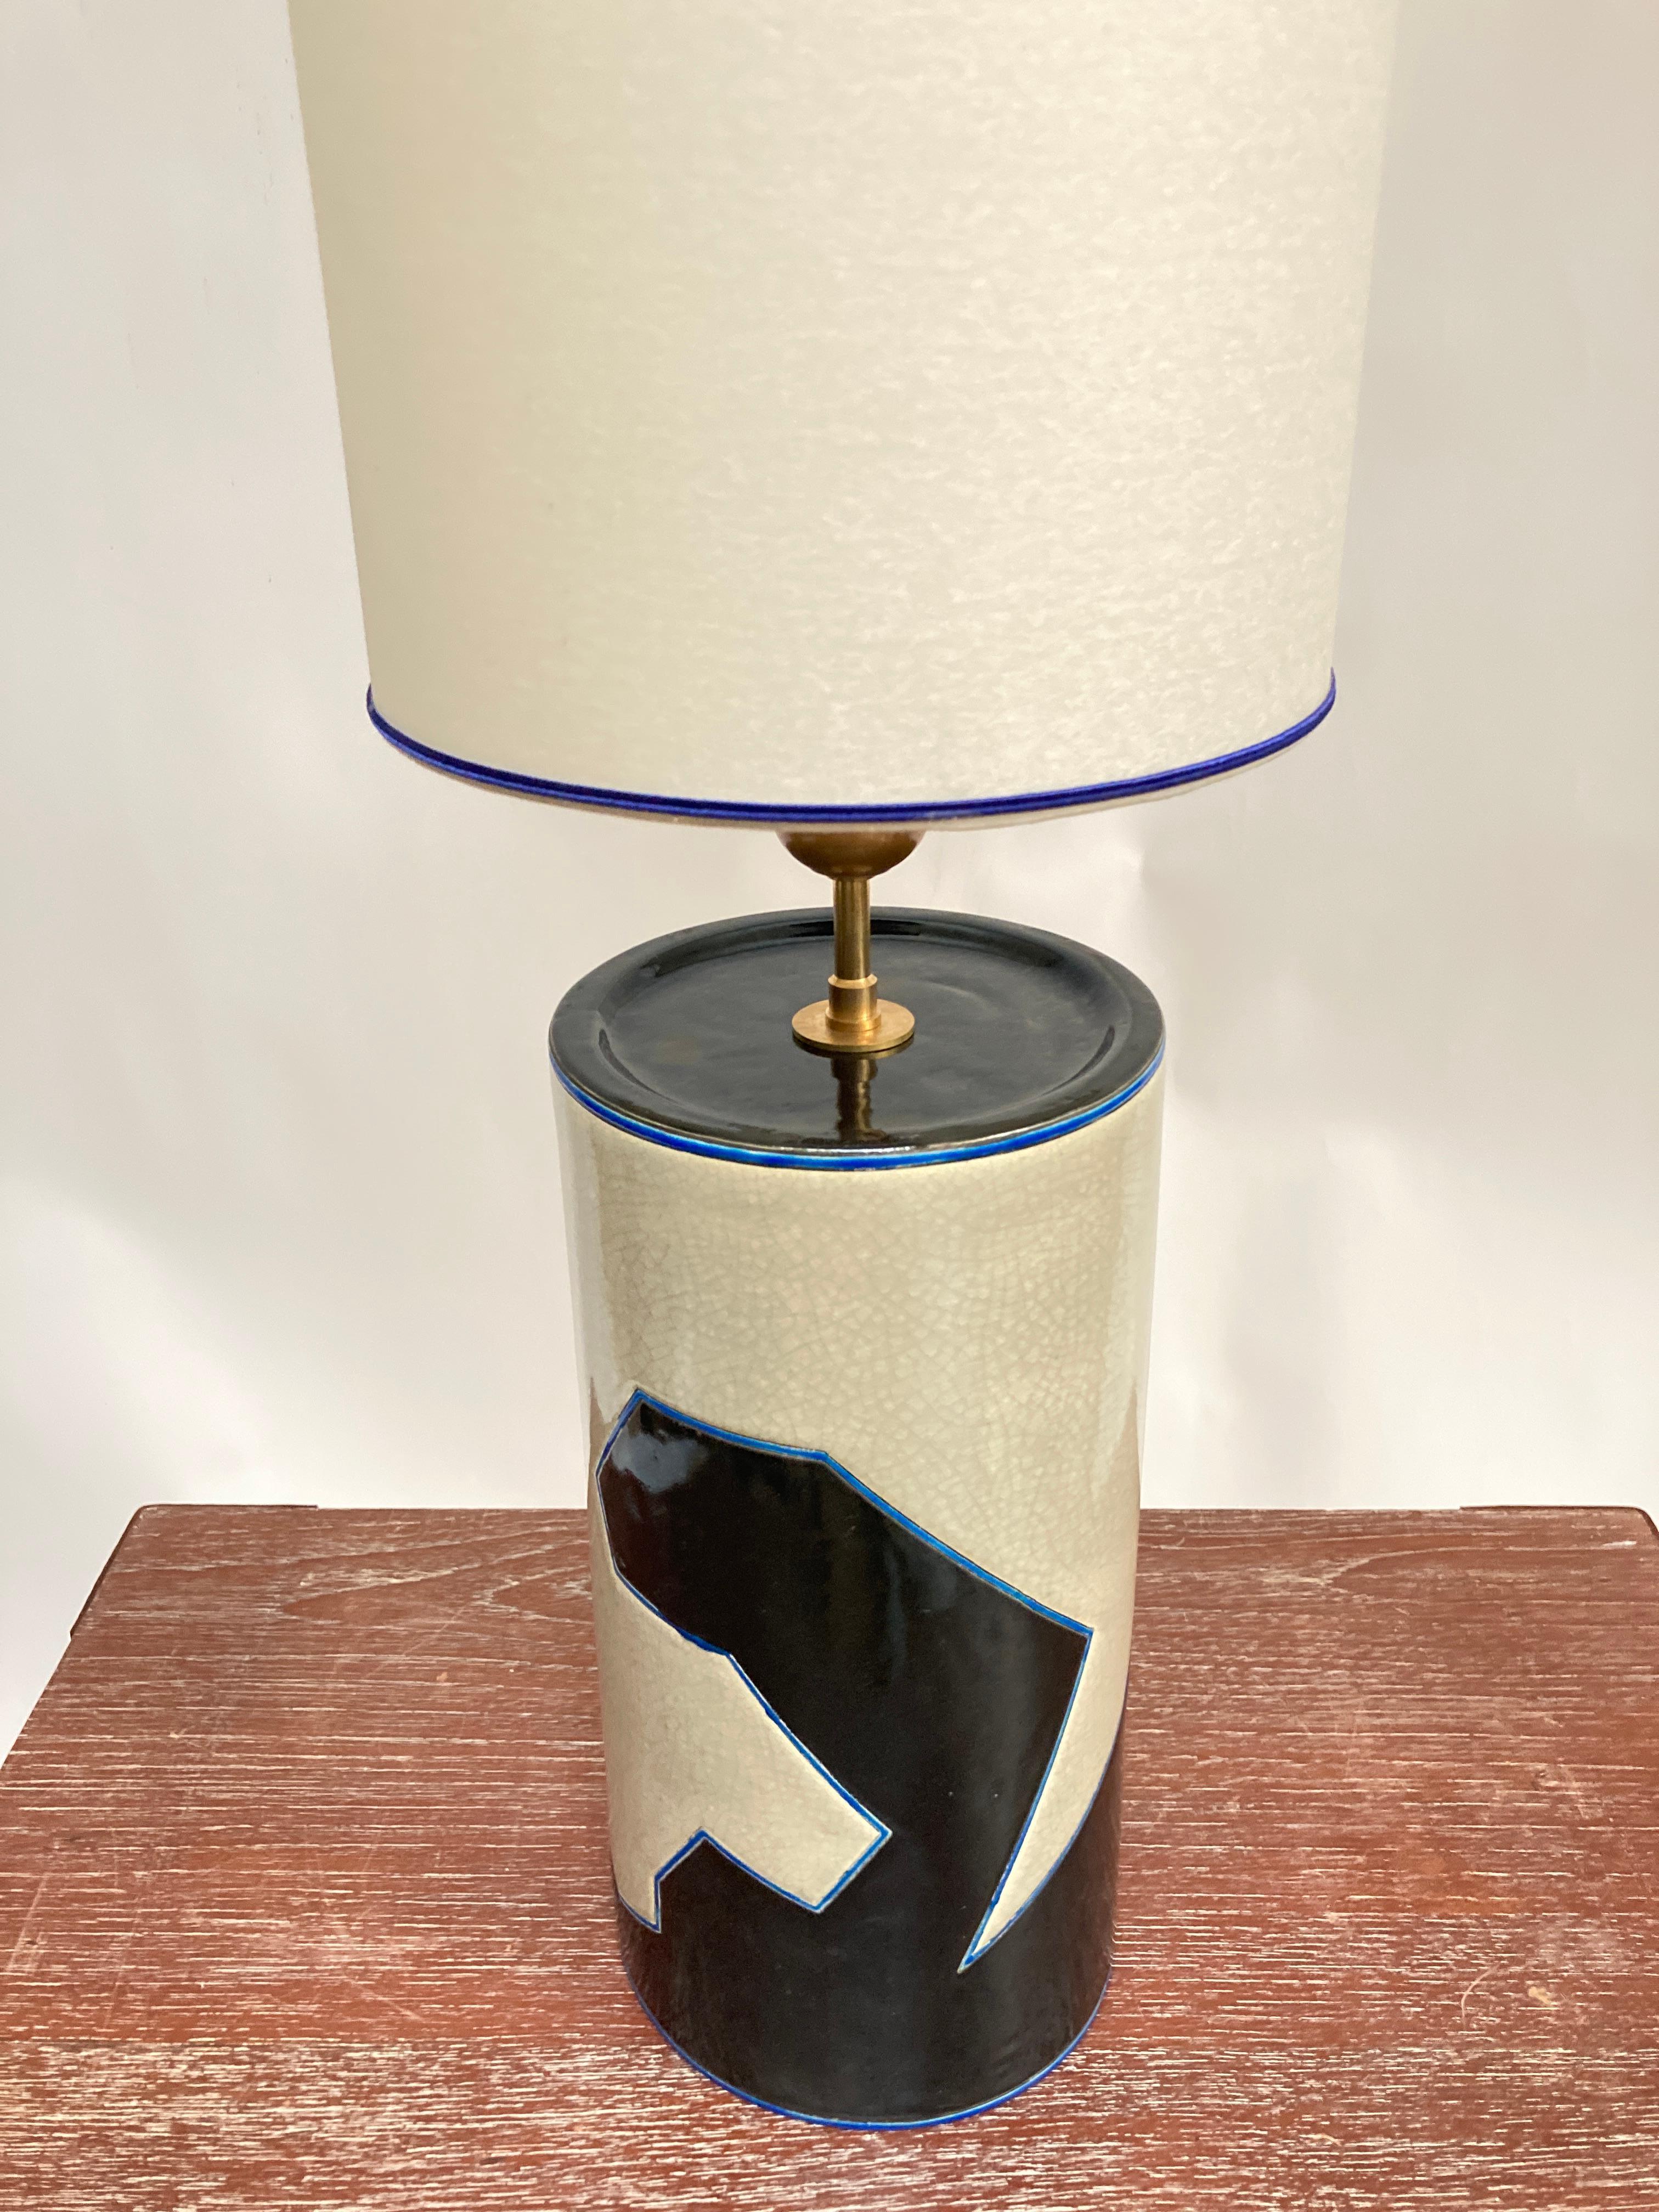 Seltene Keramiklampe aus den 1980er Jahren von Emaux de Longwy (Nordostfrankreich)
Maße ohne Schirm angegeben
Kein Schatten enthalten